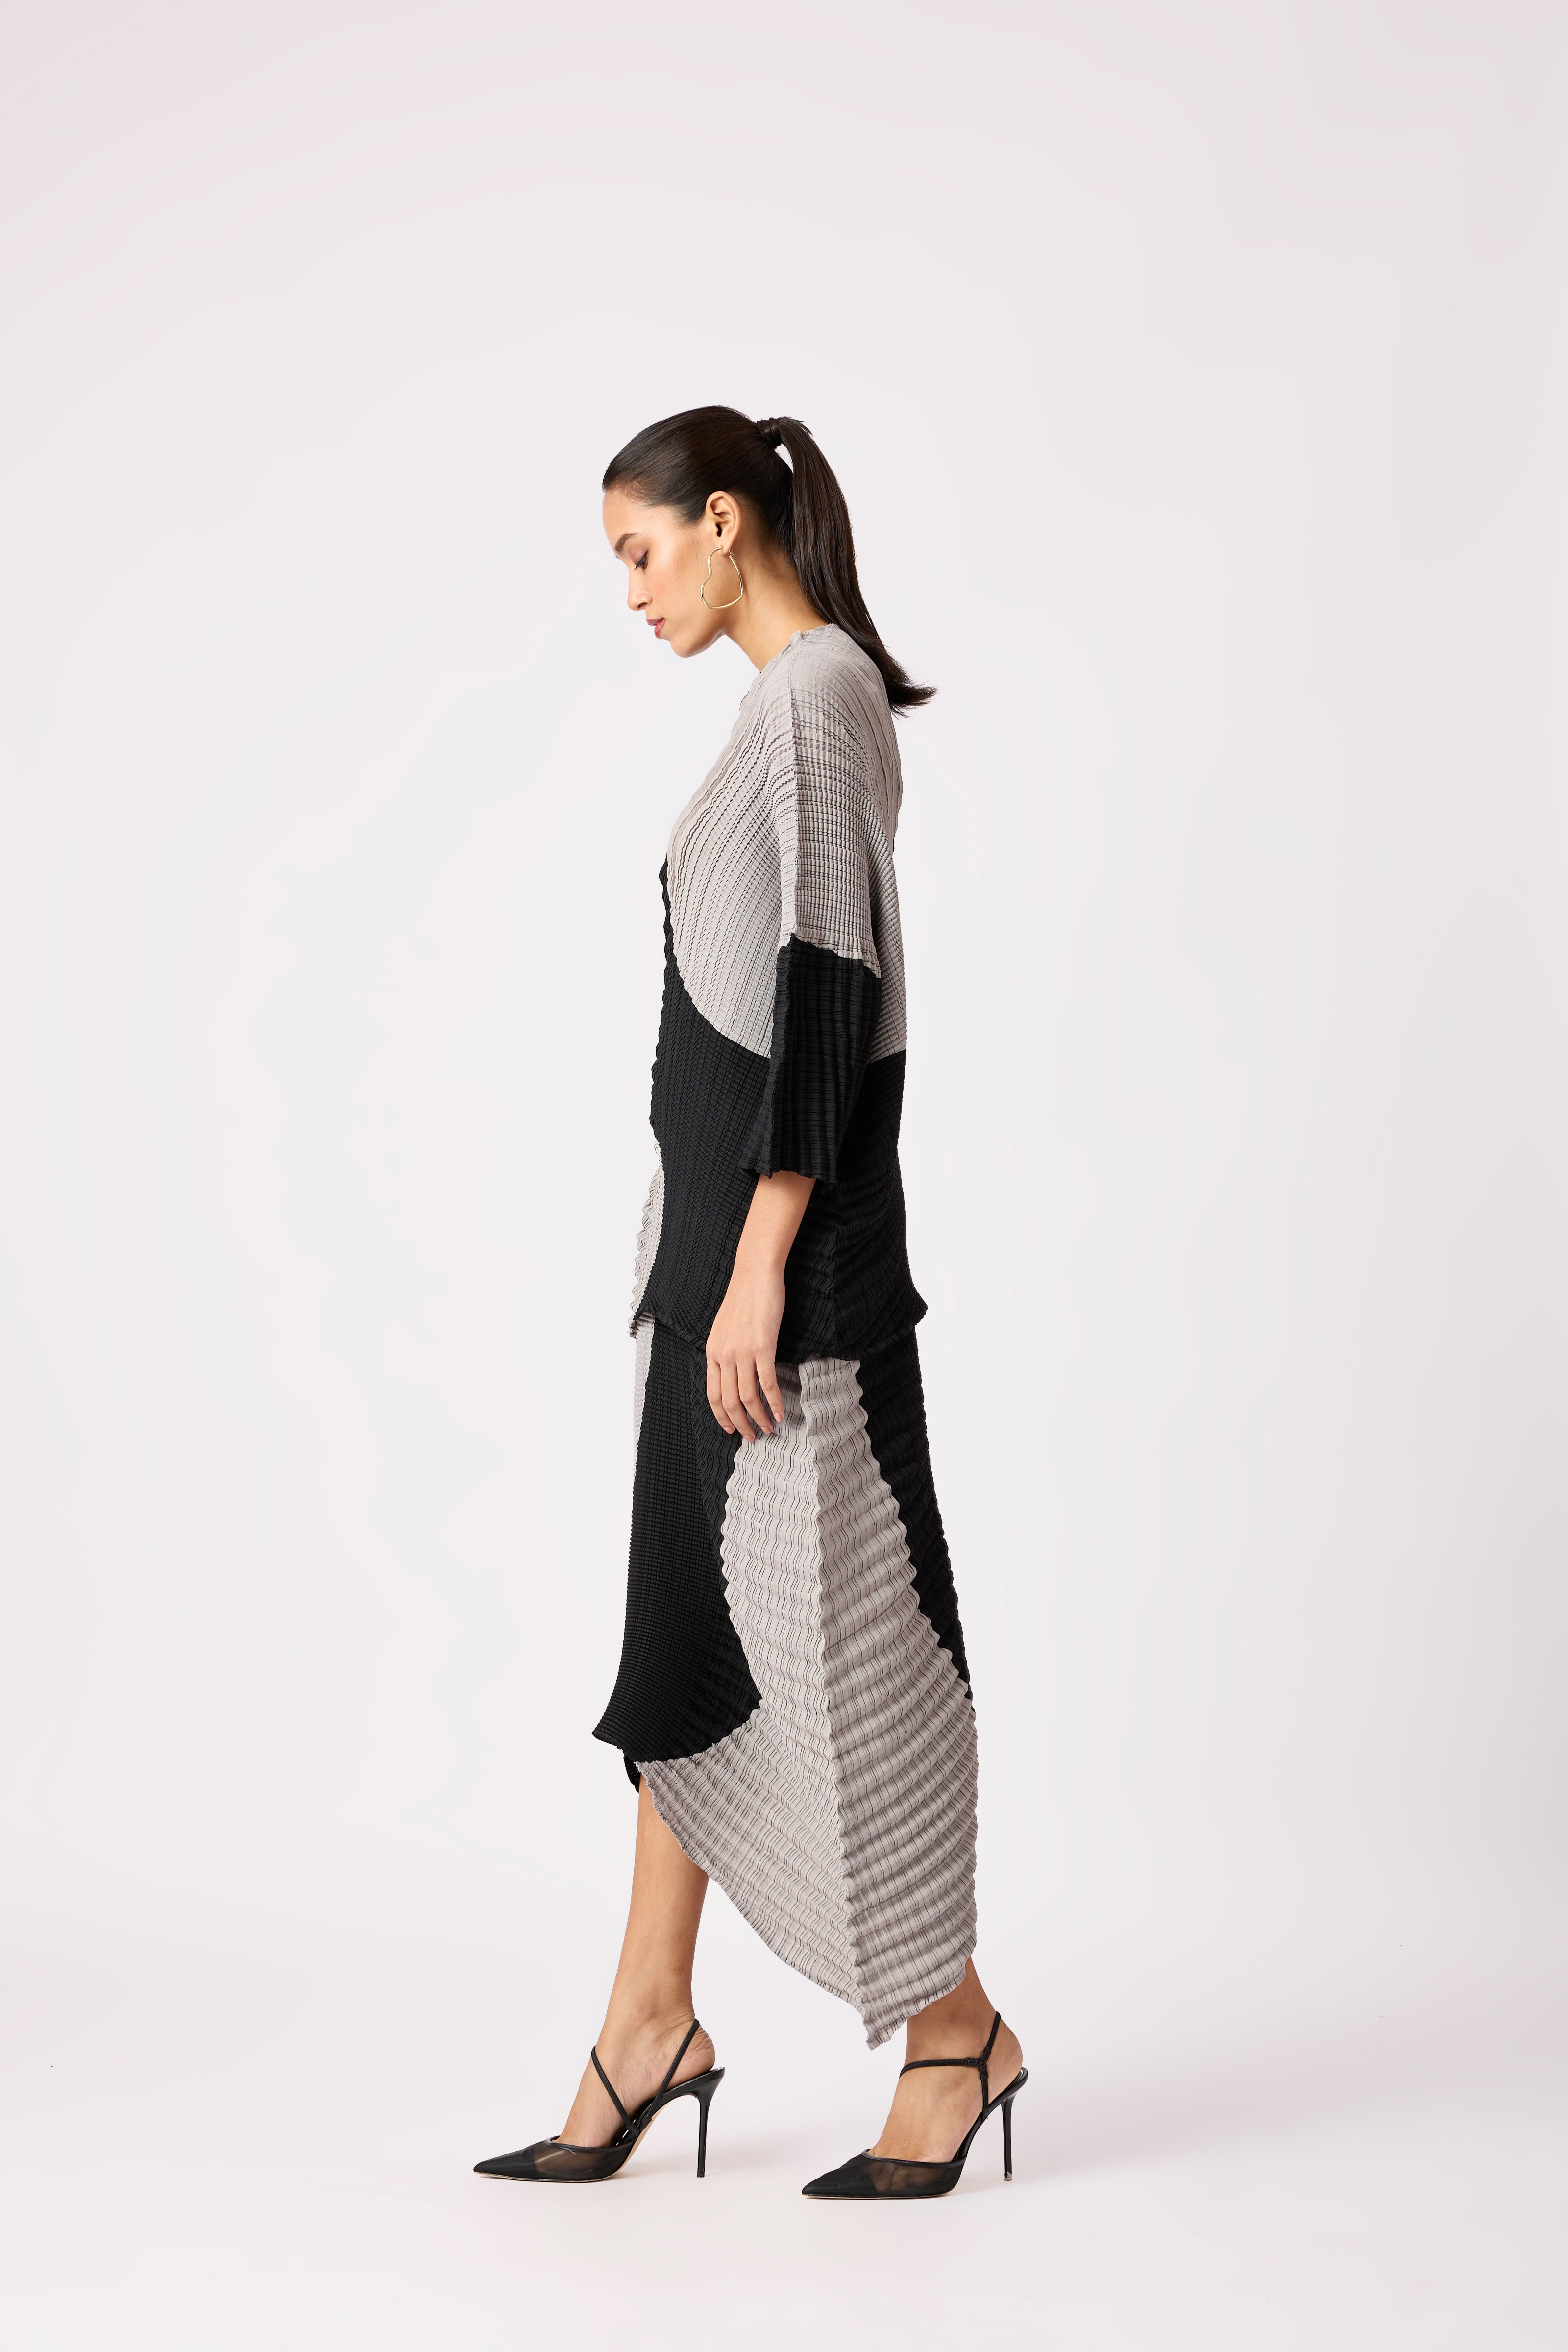 Aspen Skirt Set - Black & Grey